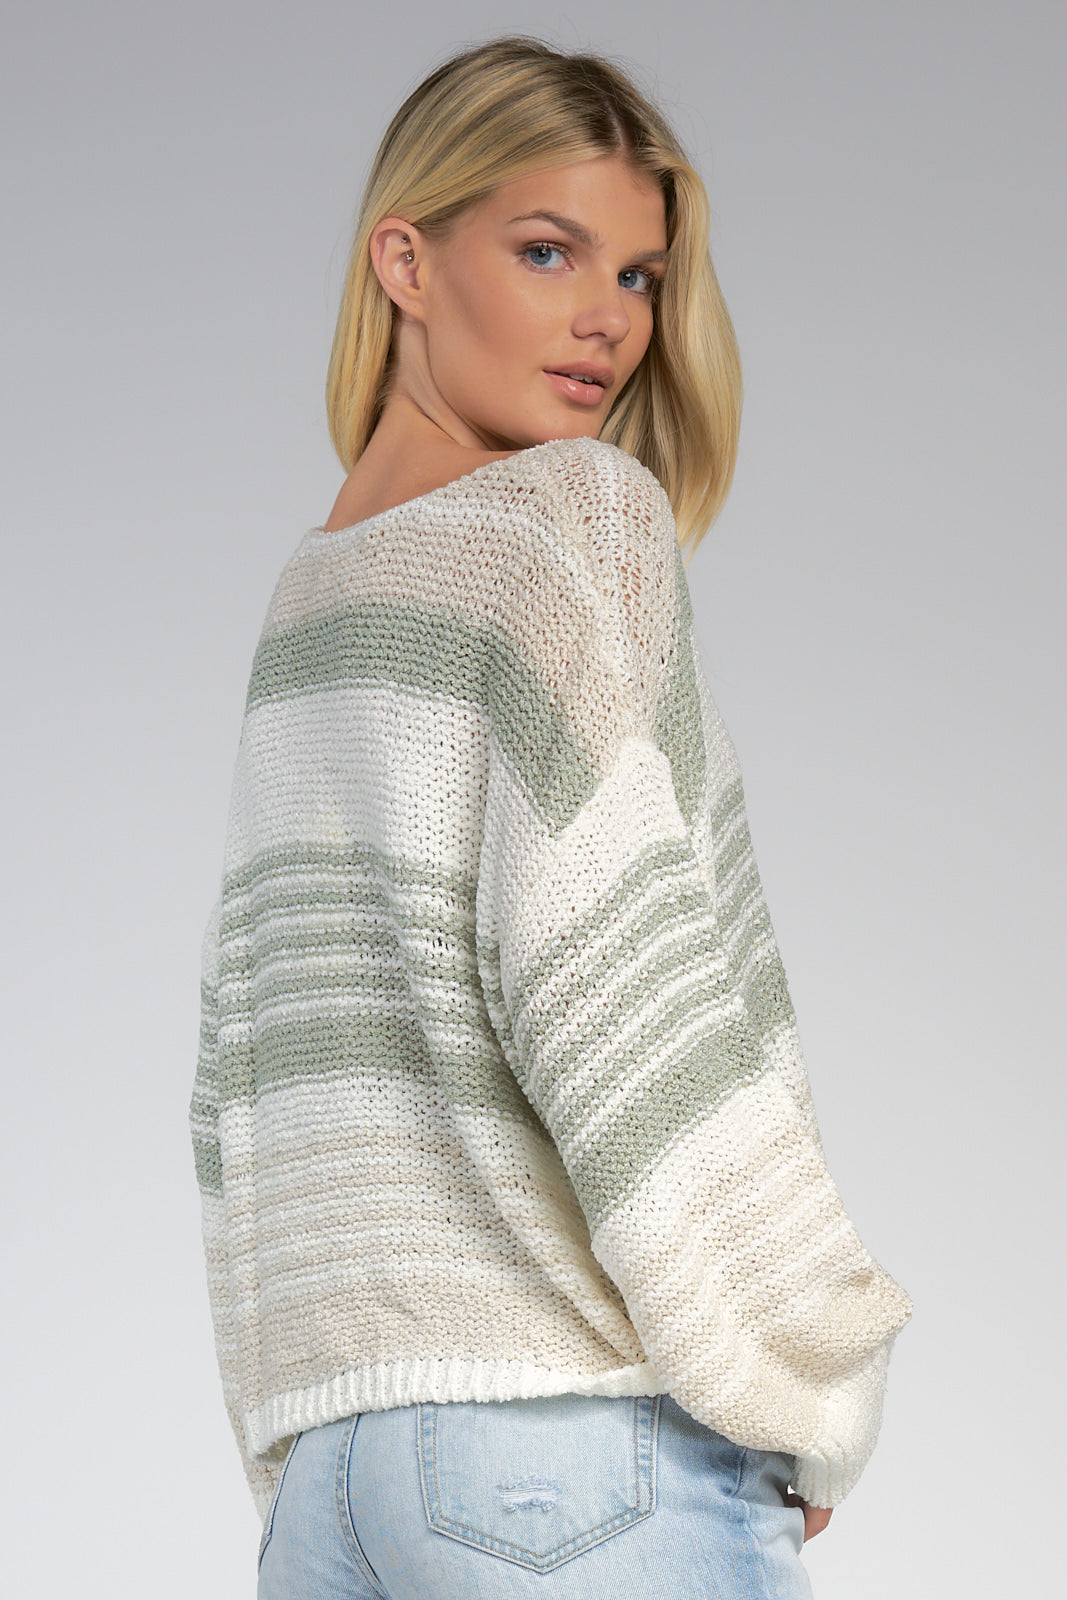 Sage Striped V-Neck Sweater